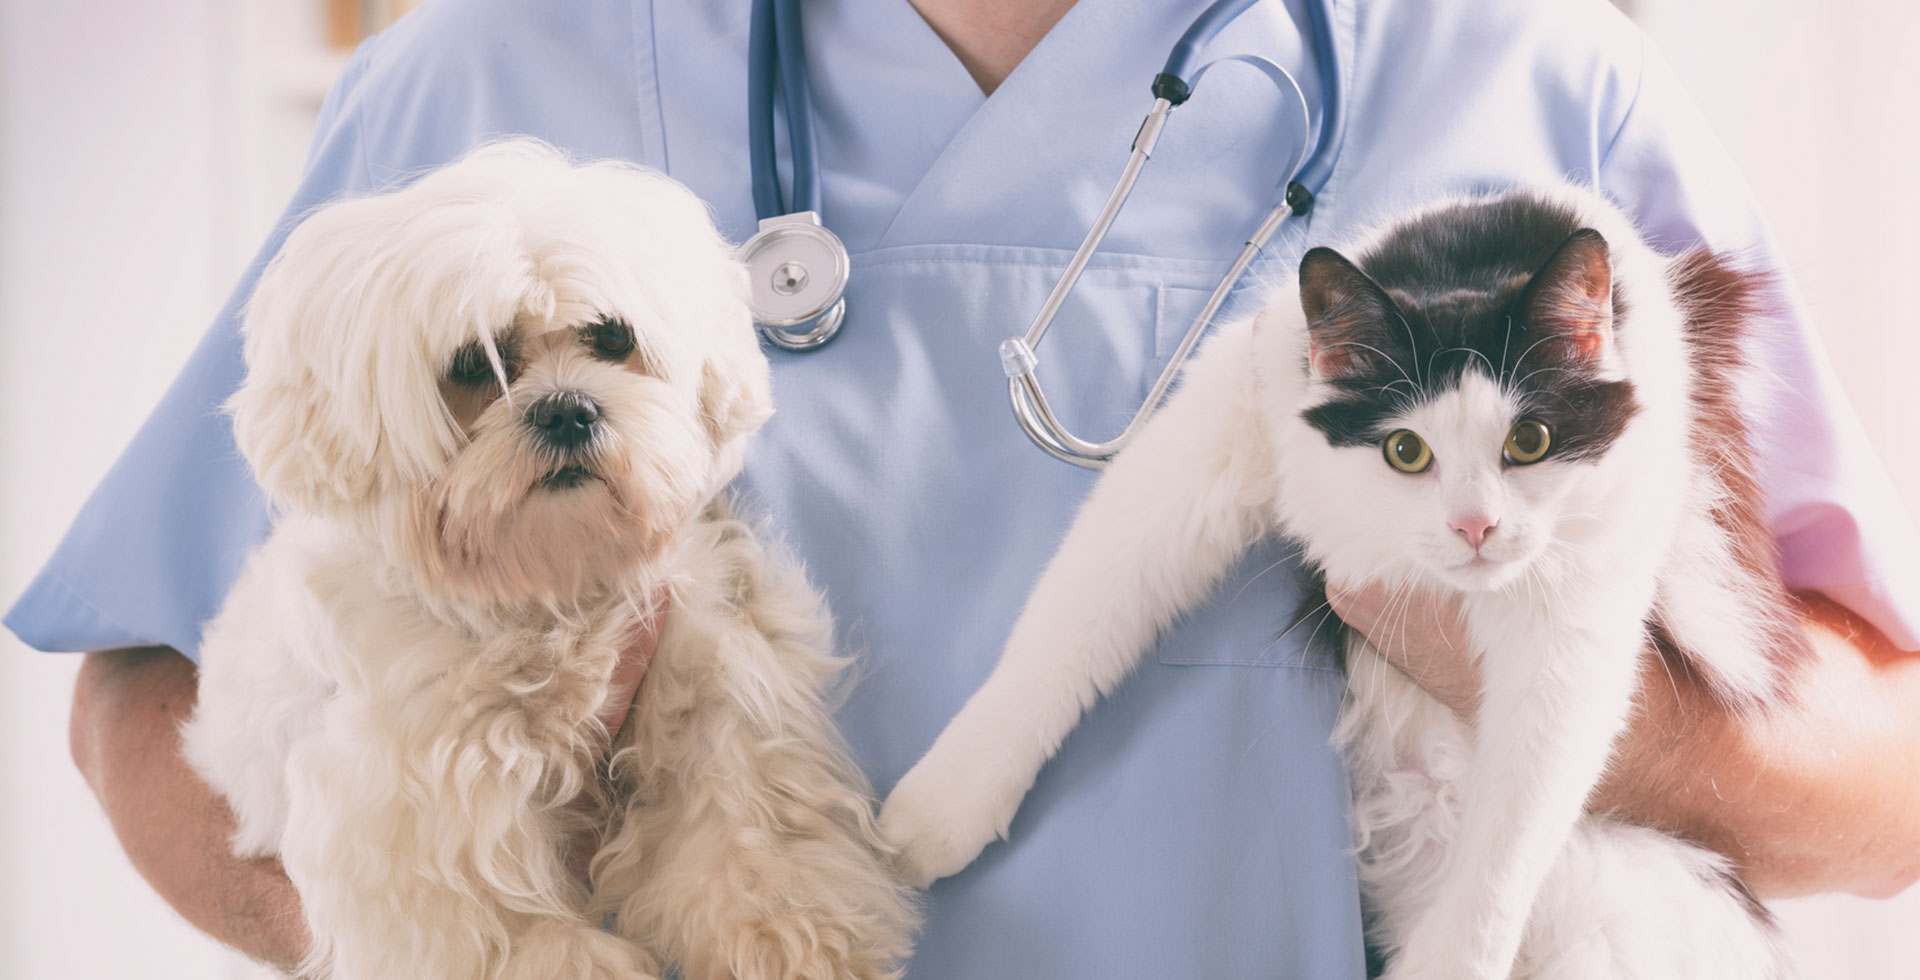 Dịch vụ chăm sóc thú cưng - ý tưởng kinh doanh không cần nhiều vốn